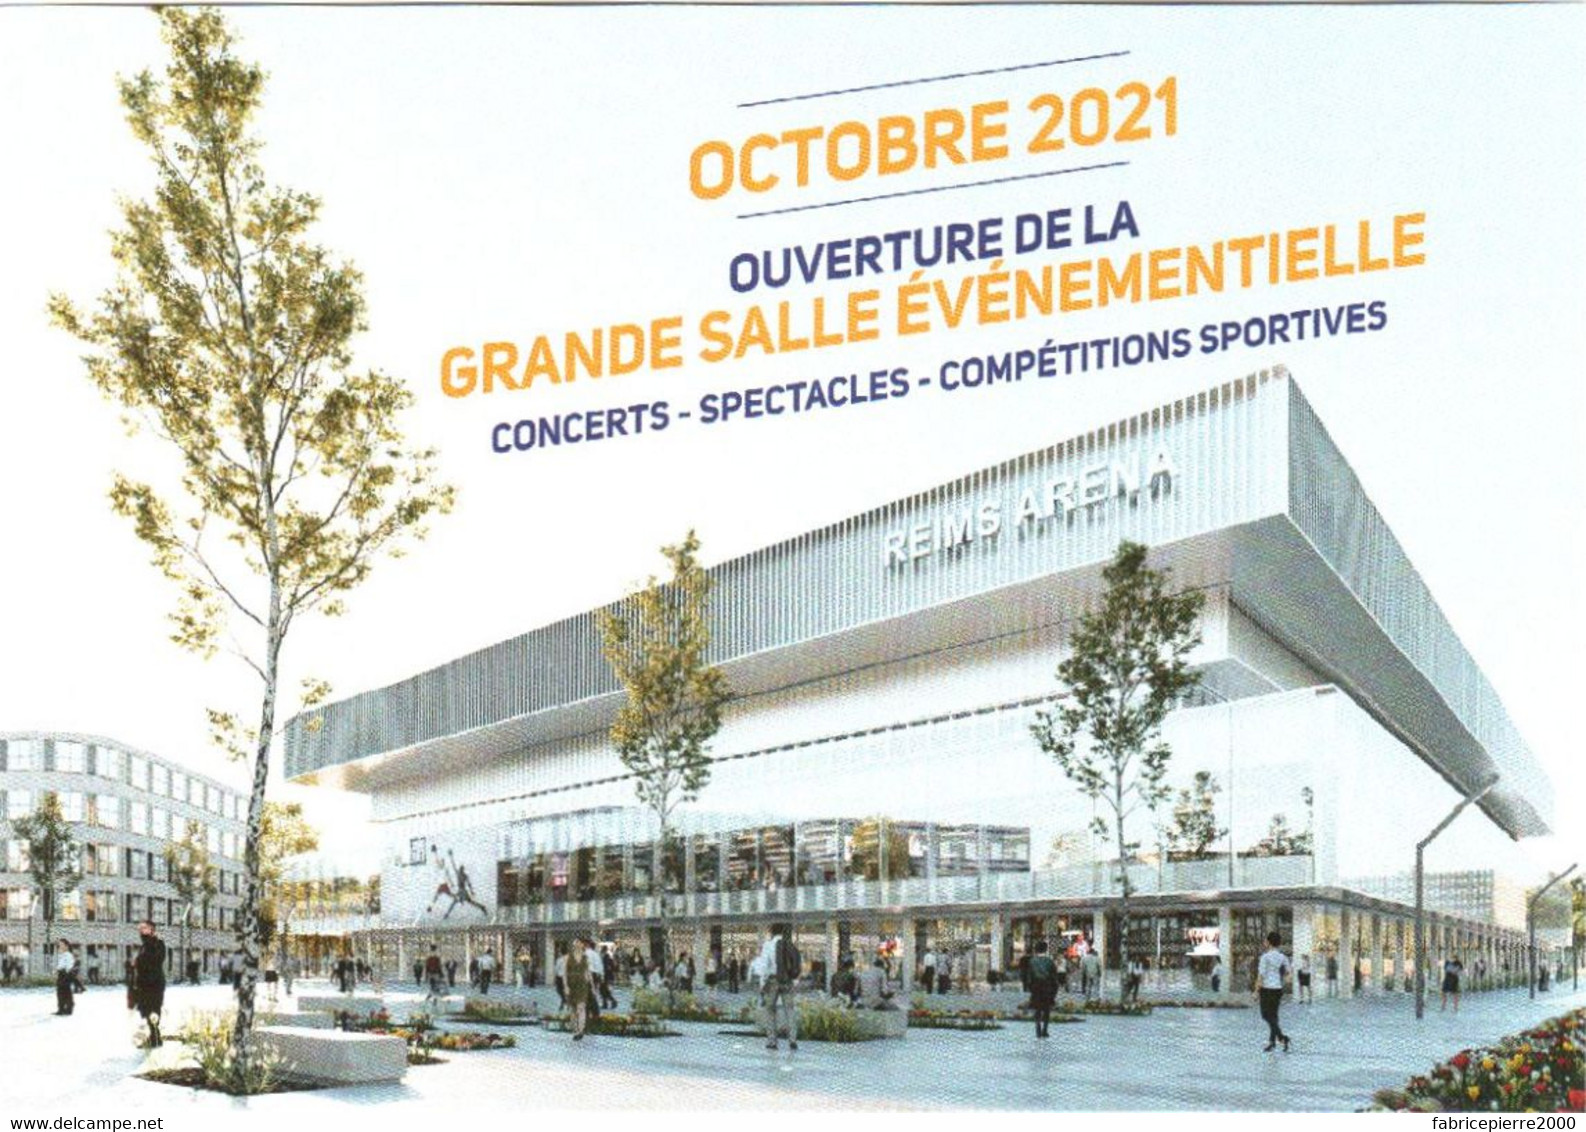 CPM 51 (Marne) Reims - Octobre 2021 Ouverture De La Grande Salle Evènementielle REIMS ARENA Concerts, Spectacles...TBE - Inaugurations